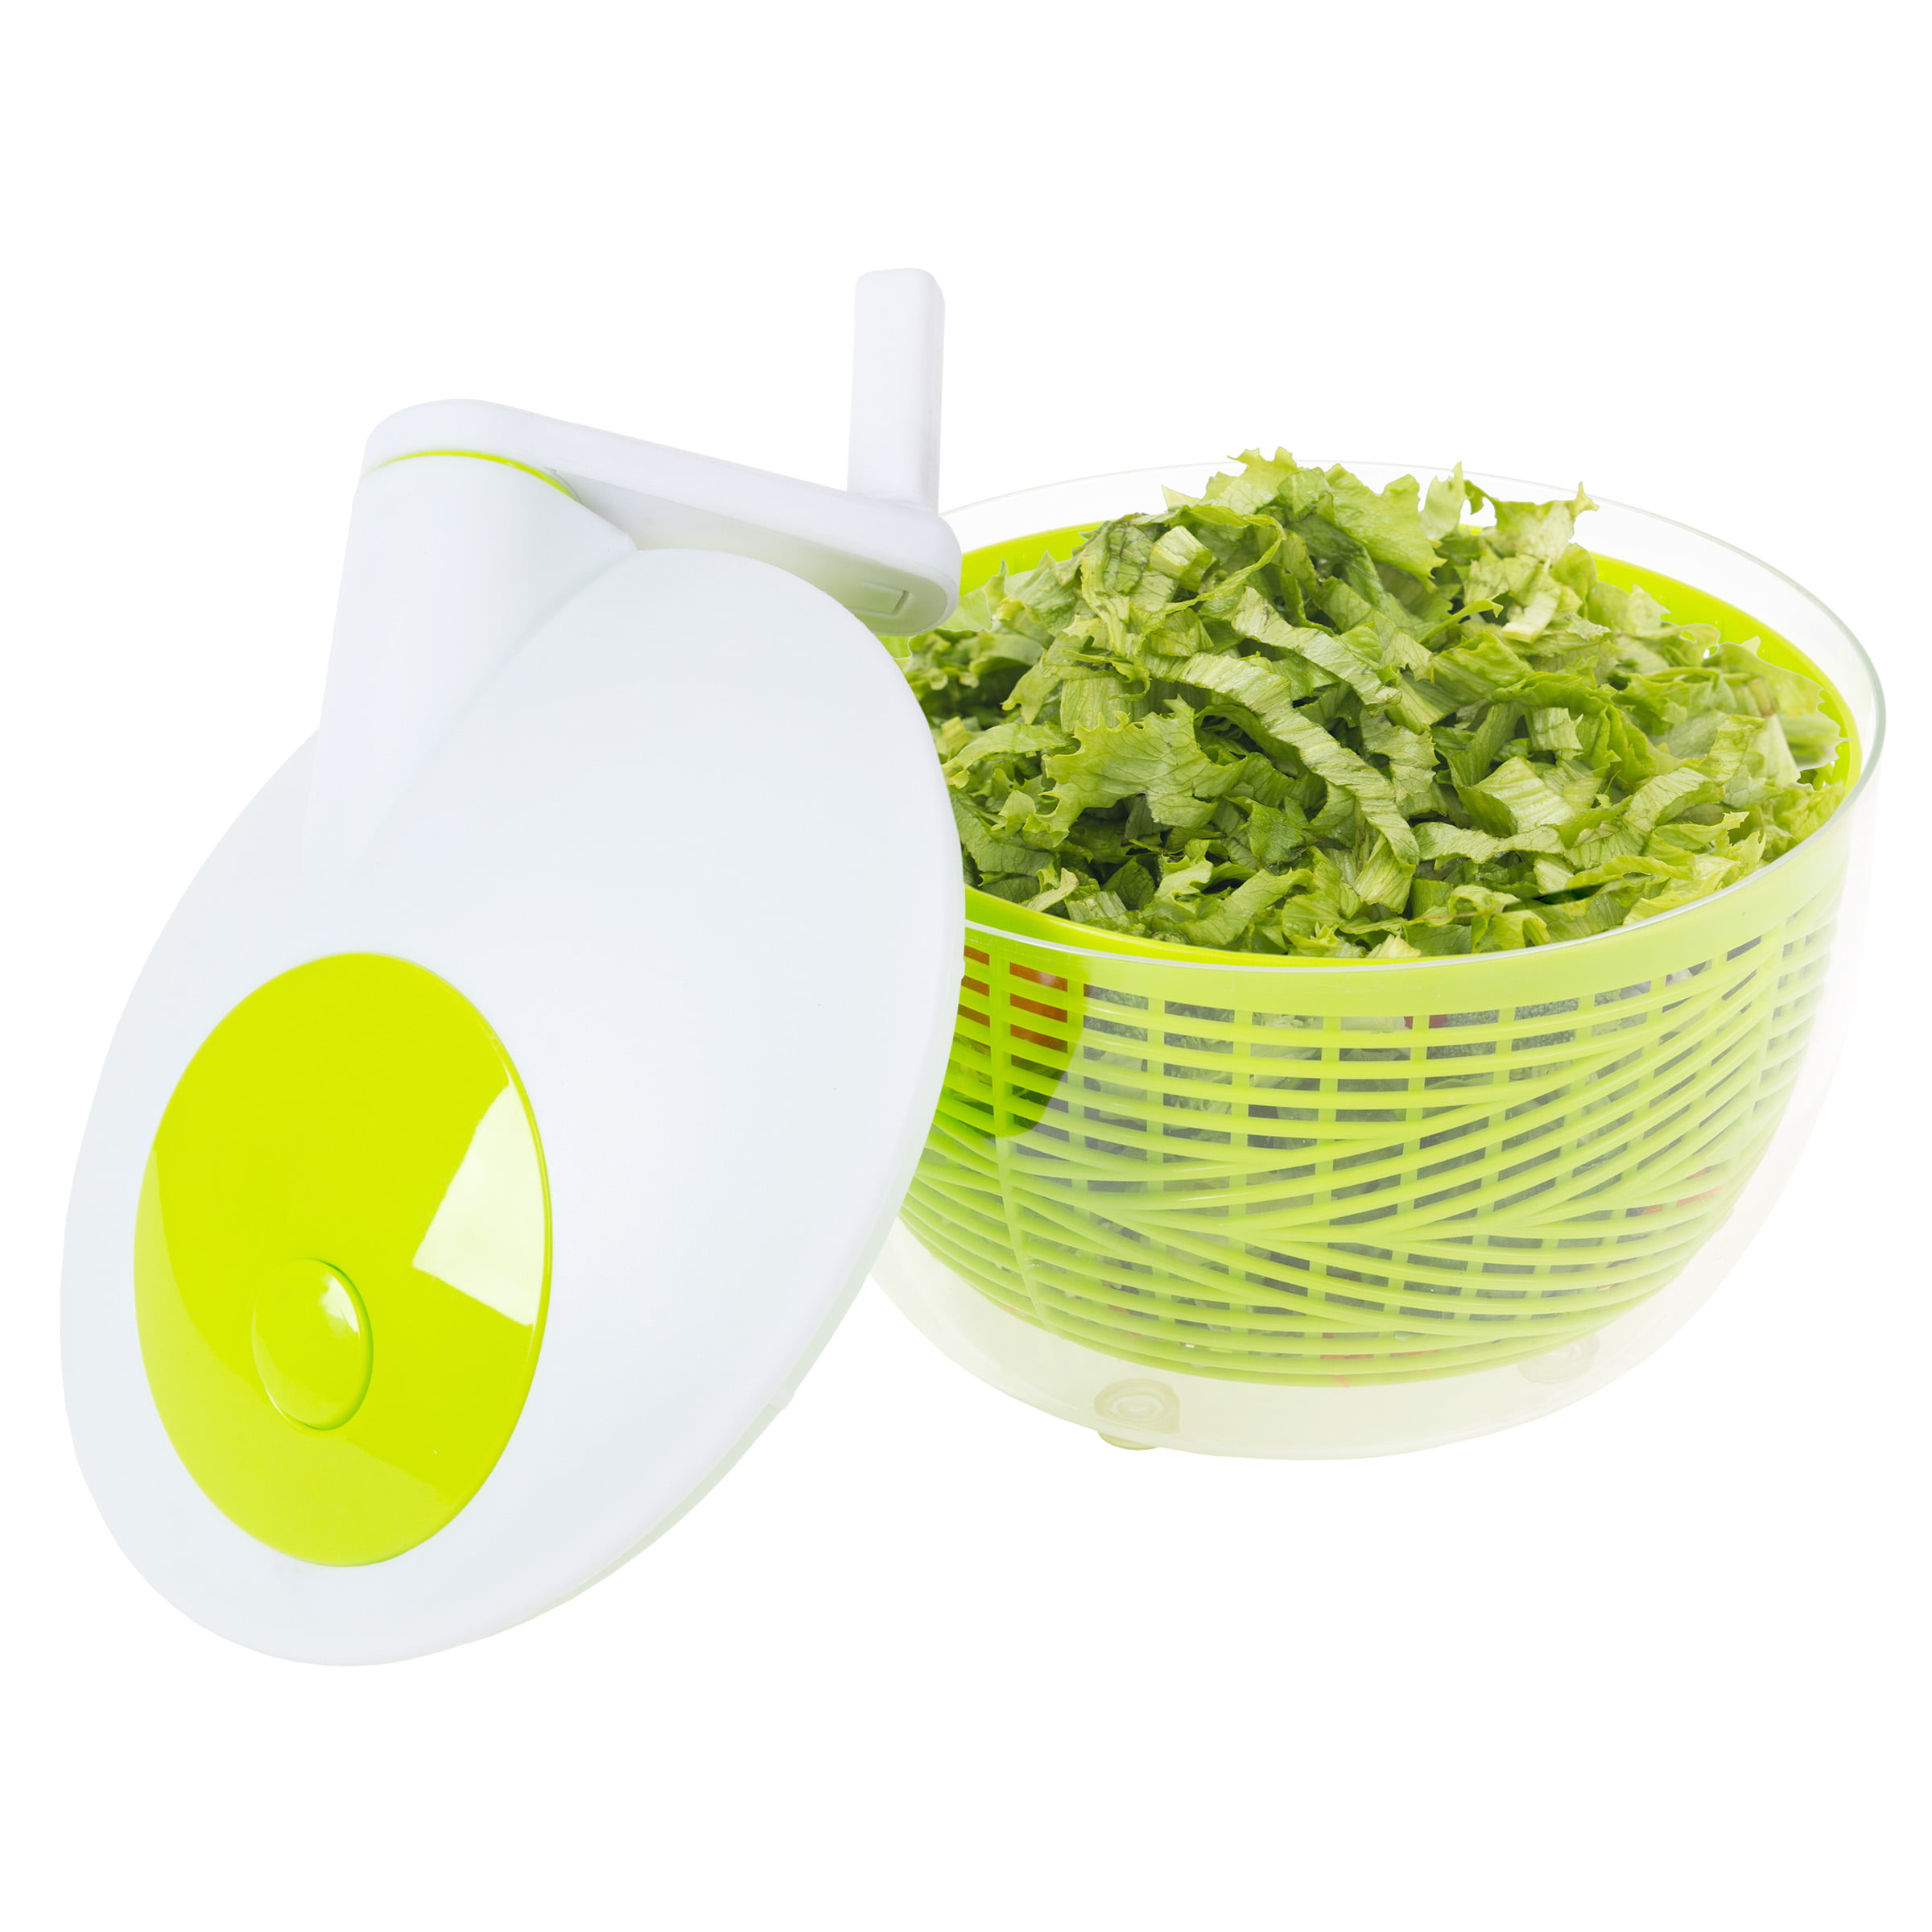 Starfrit Salad Spinner Salad Spinner Serving Dishwasher Safe GreenWhite -  Office Depot